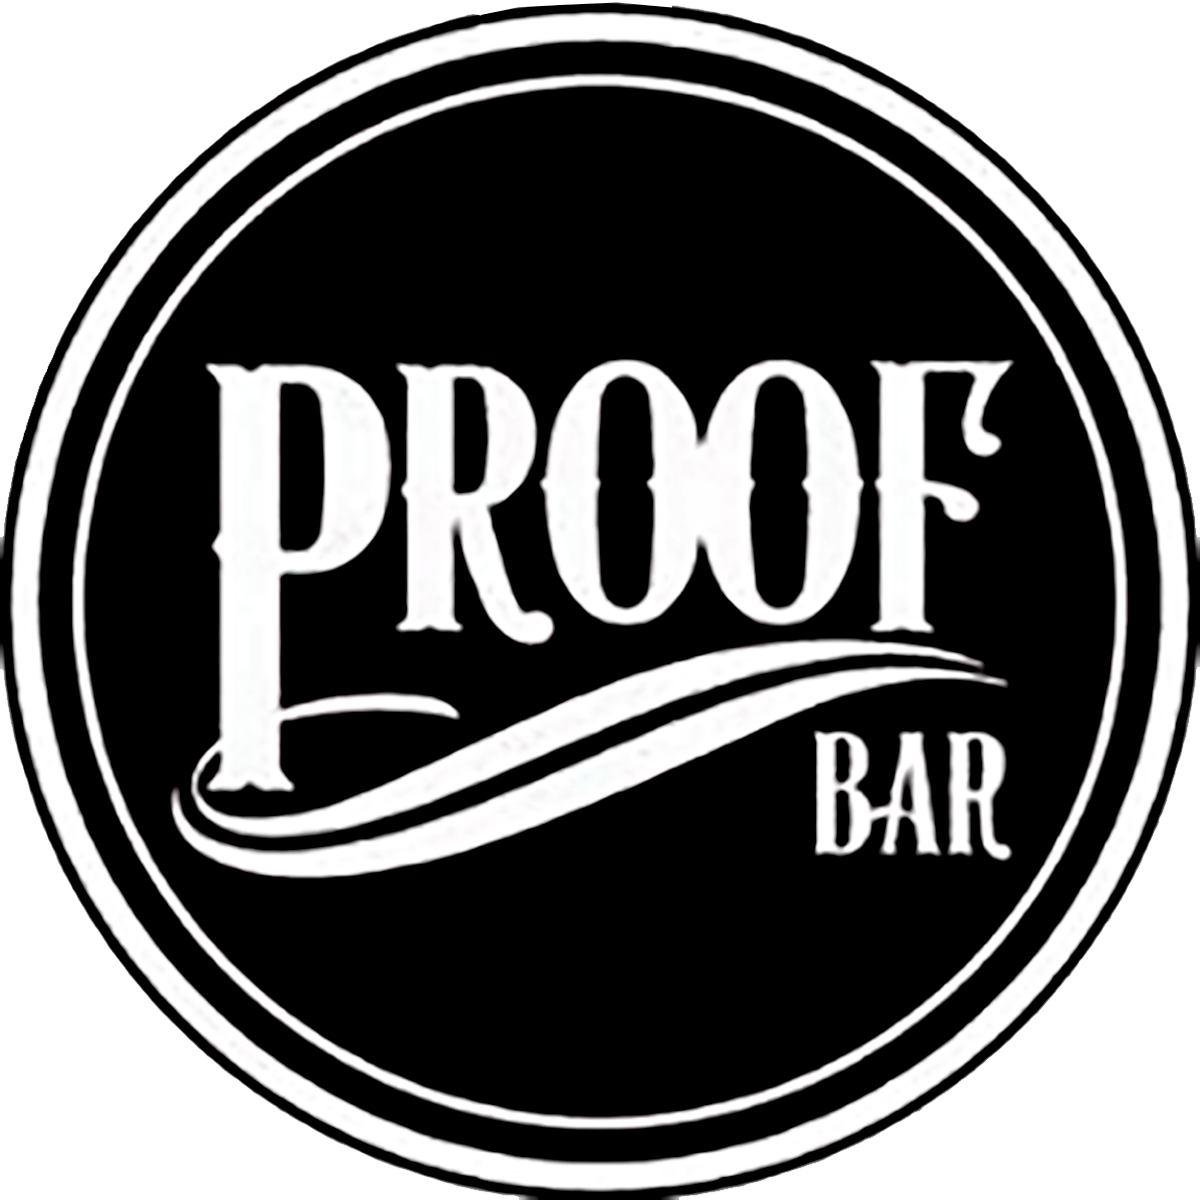 Proof bar